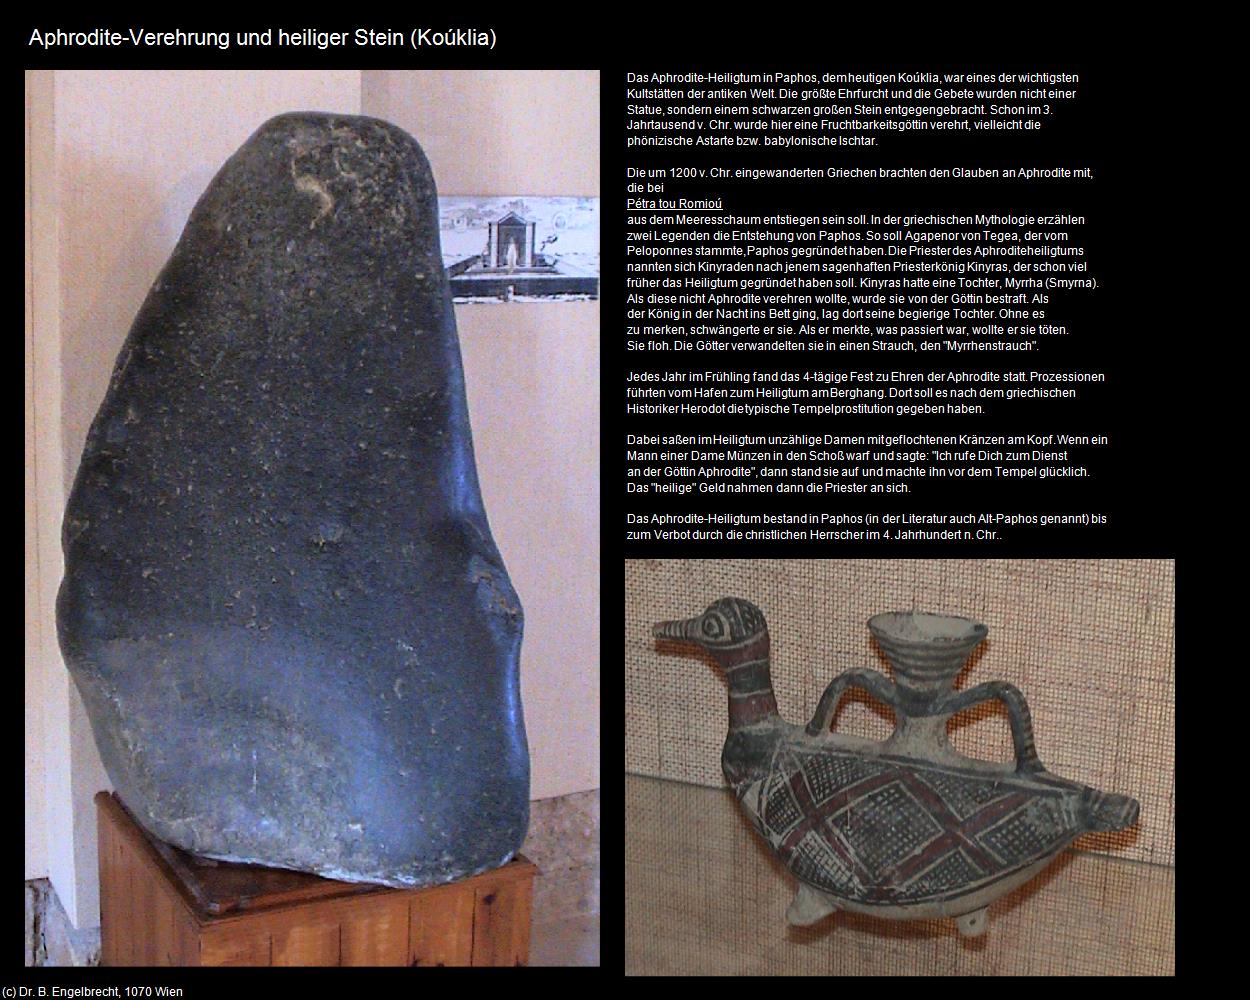 Aphrodite-Verehrung und heiliger Stein (Kouklia) in ZYPERN-Insel der Aphrodite(c)B.Engelbrecht